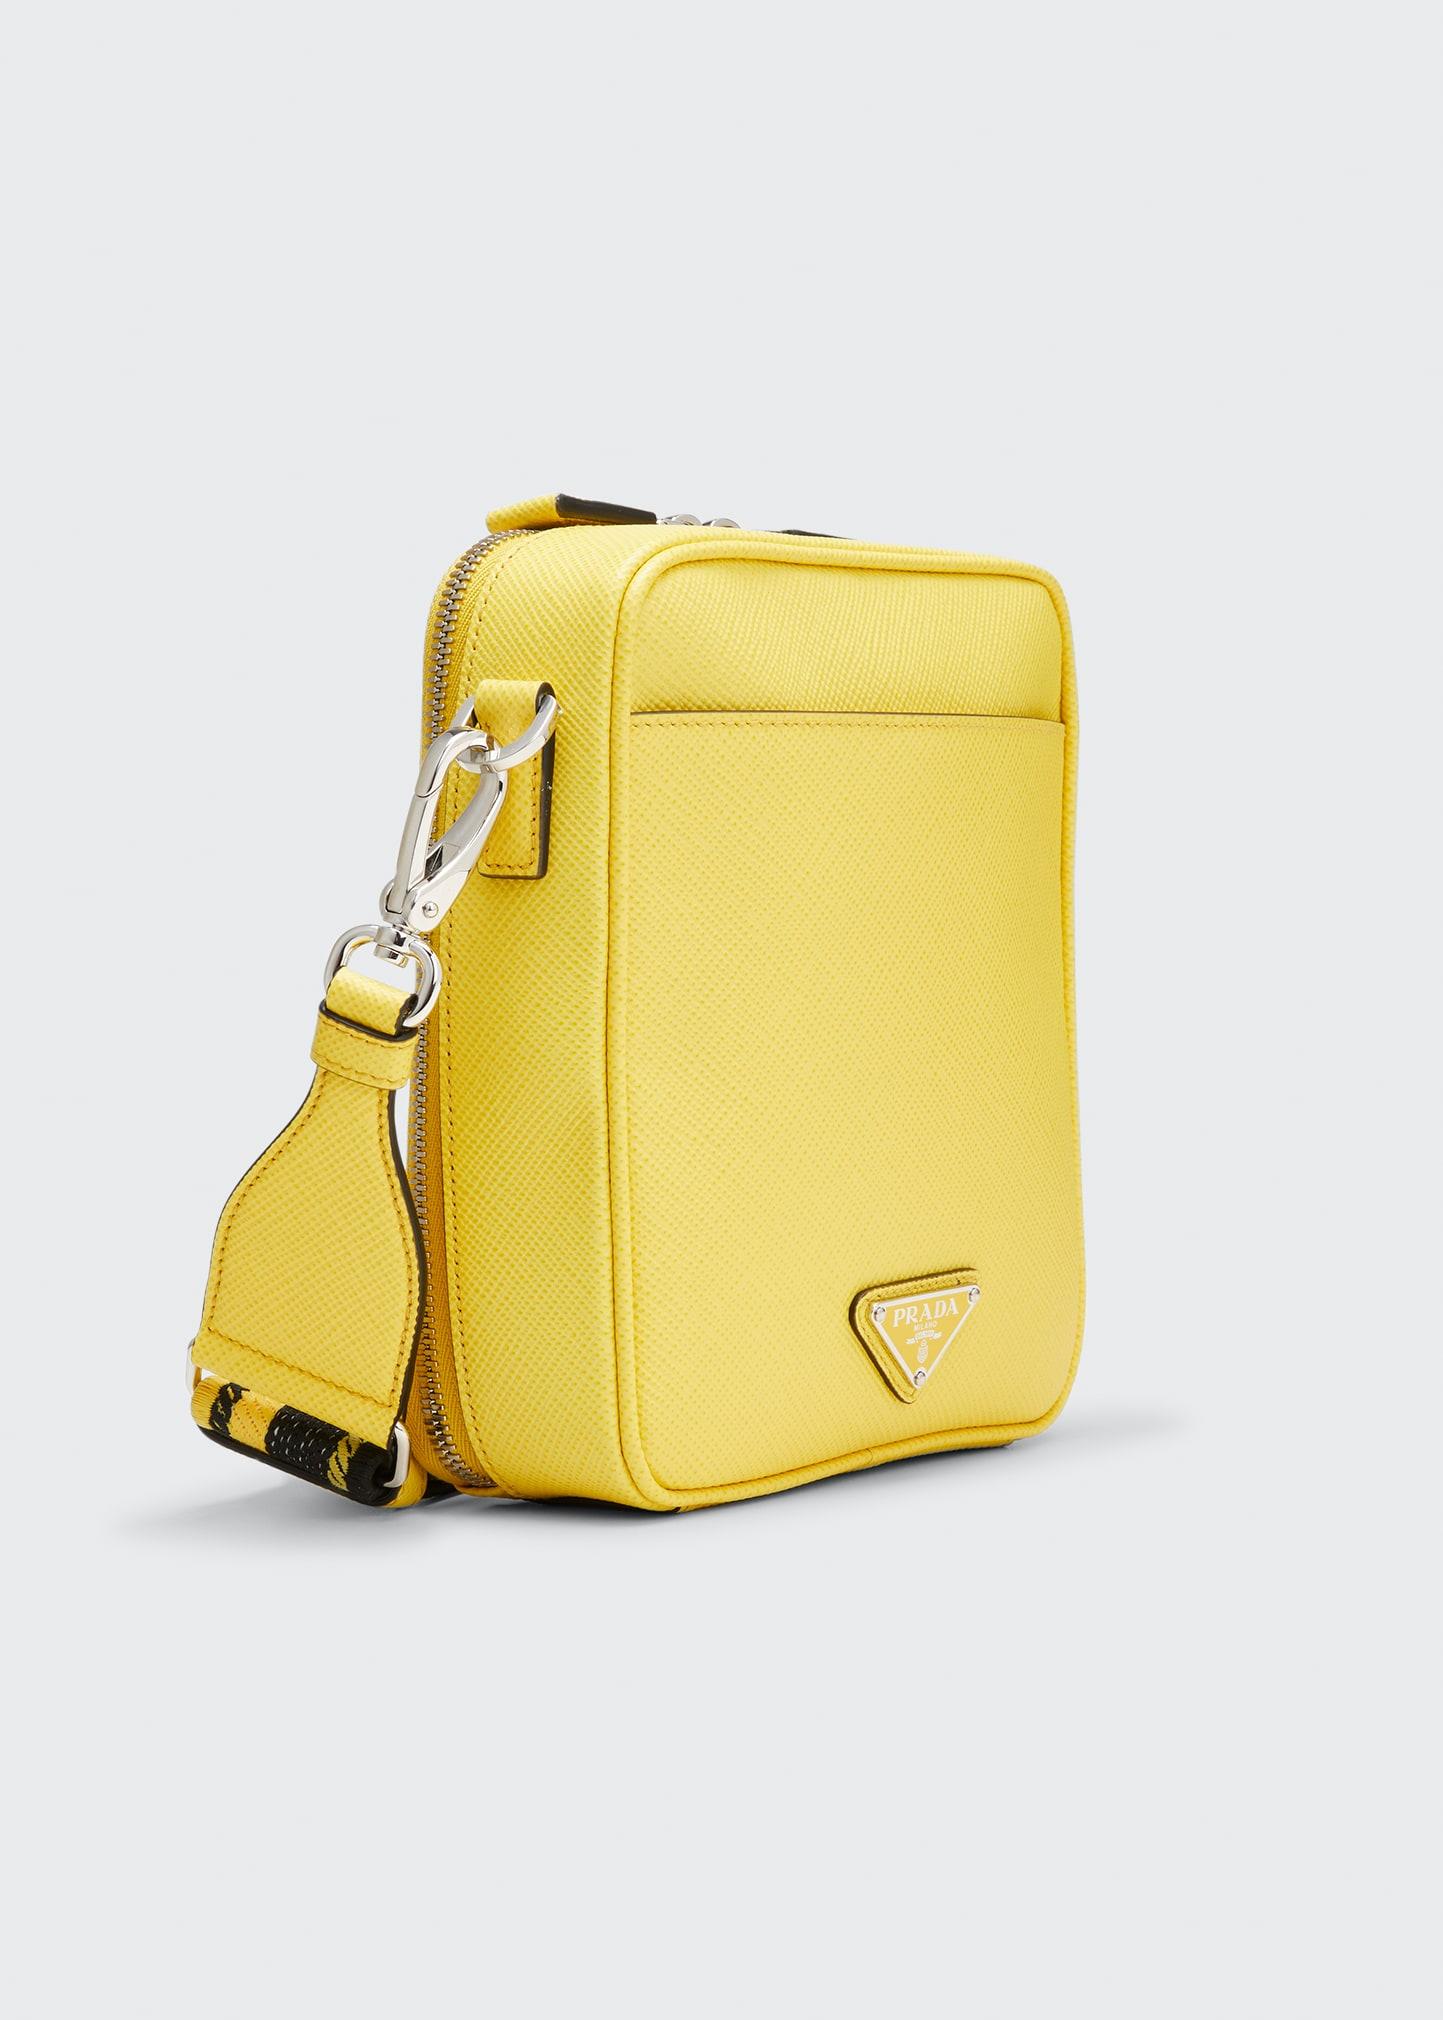 Prada Brique Shoulder Bag, $1,750, farfetch.com